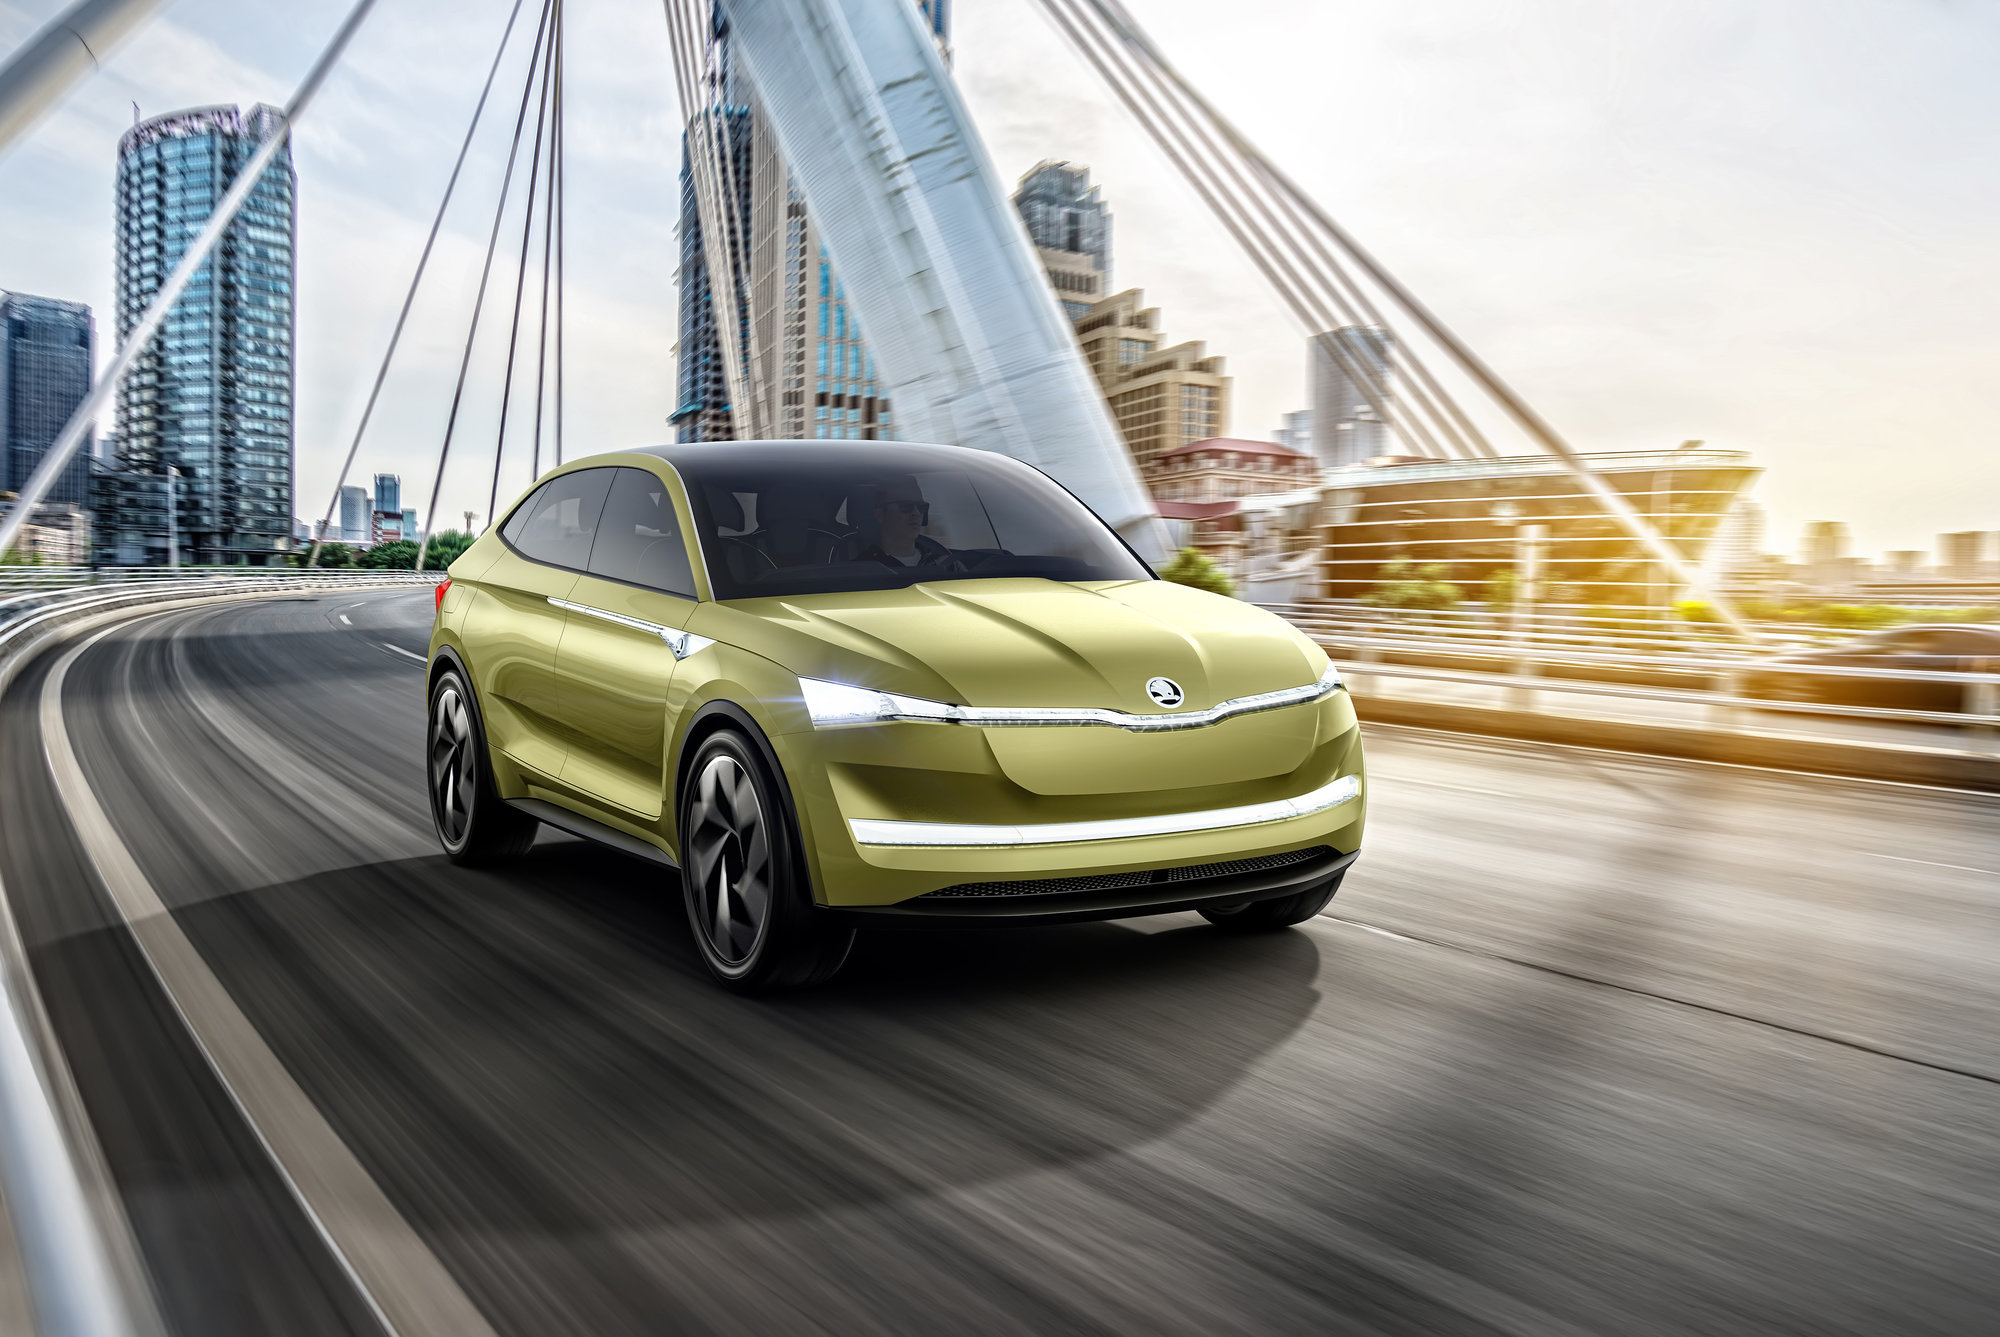 Pokročilými systémy autonomního řízení by měla být vybavena i novinka ze stáje Škoda - koncept Vision E